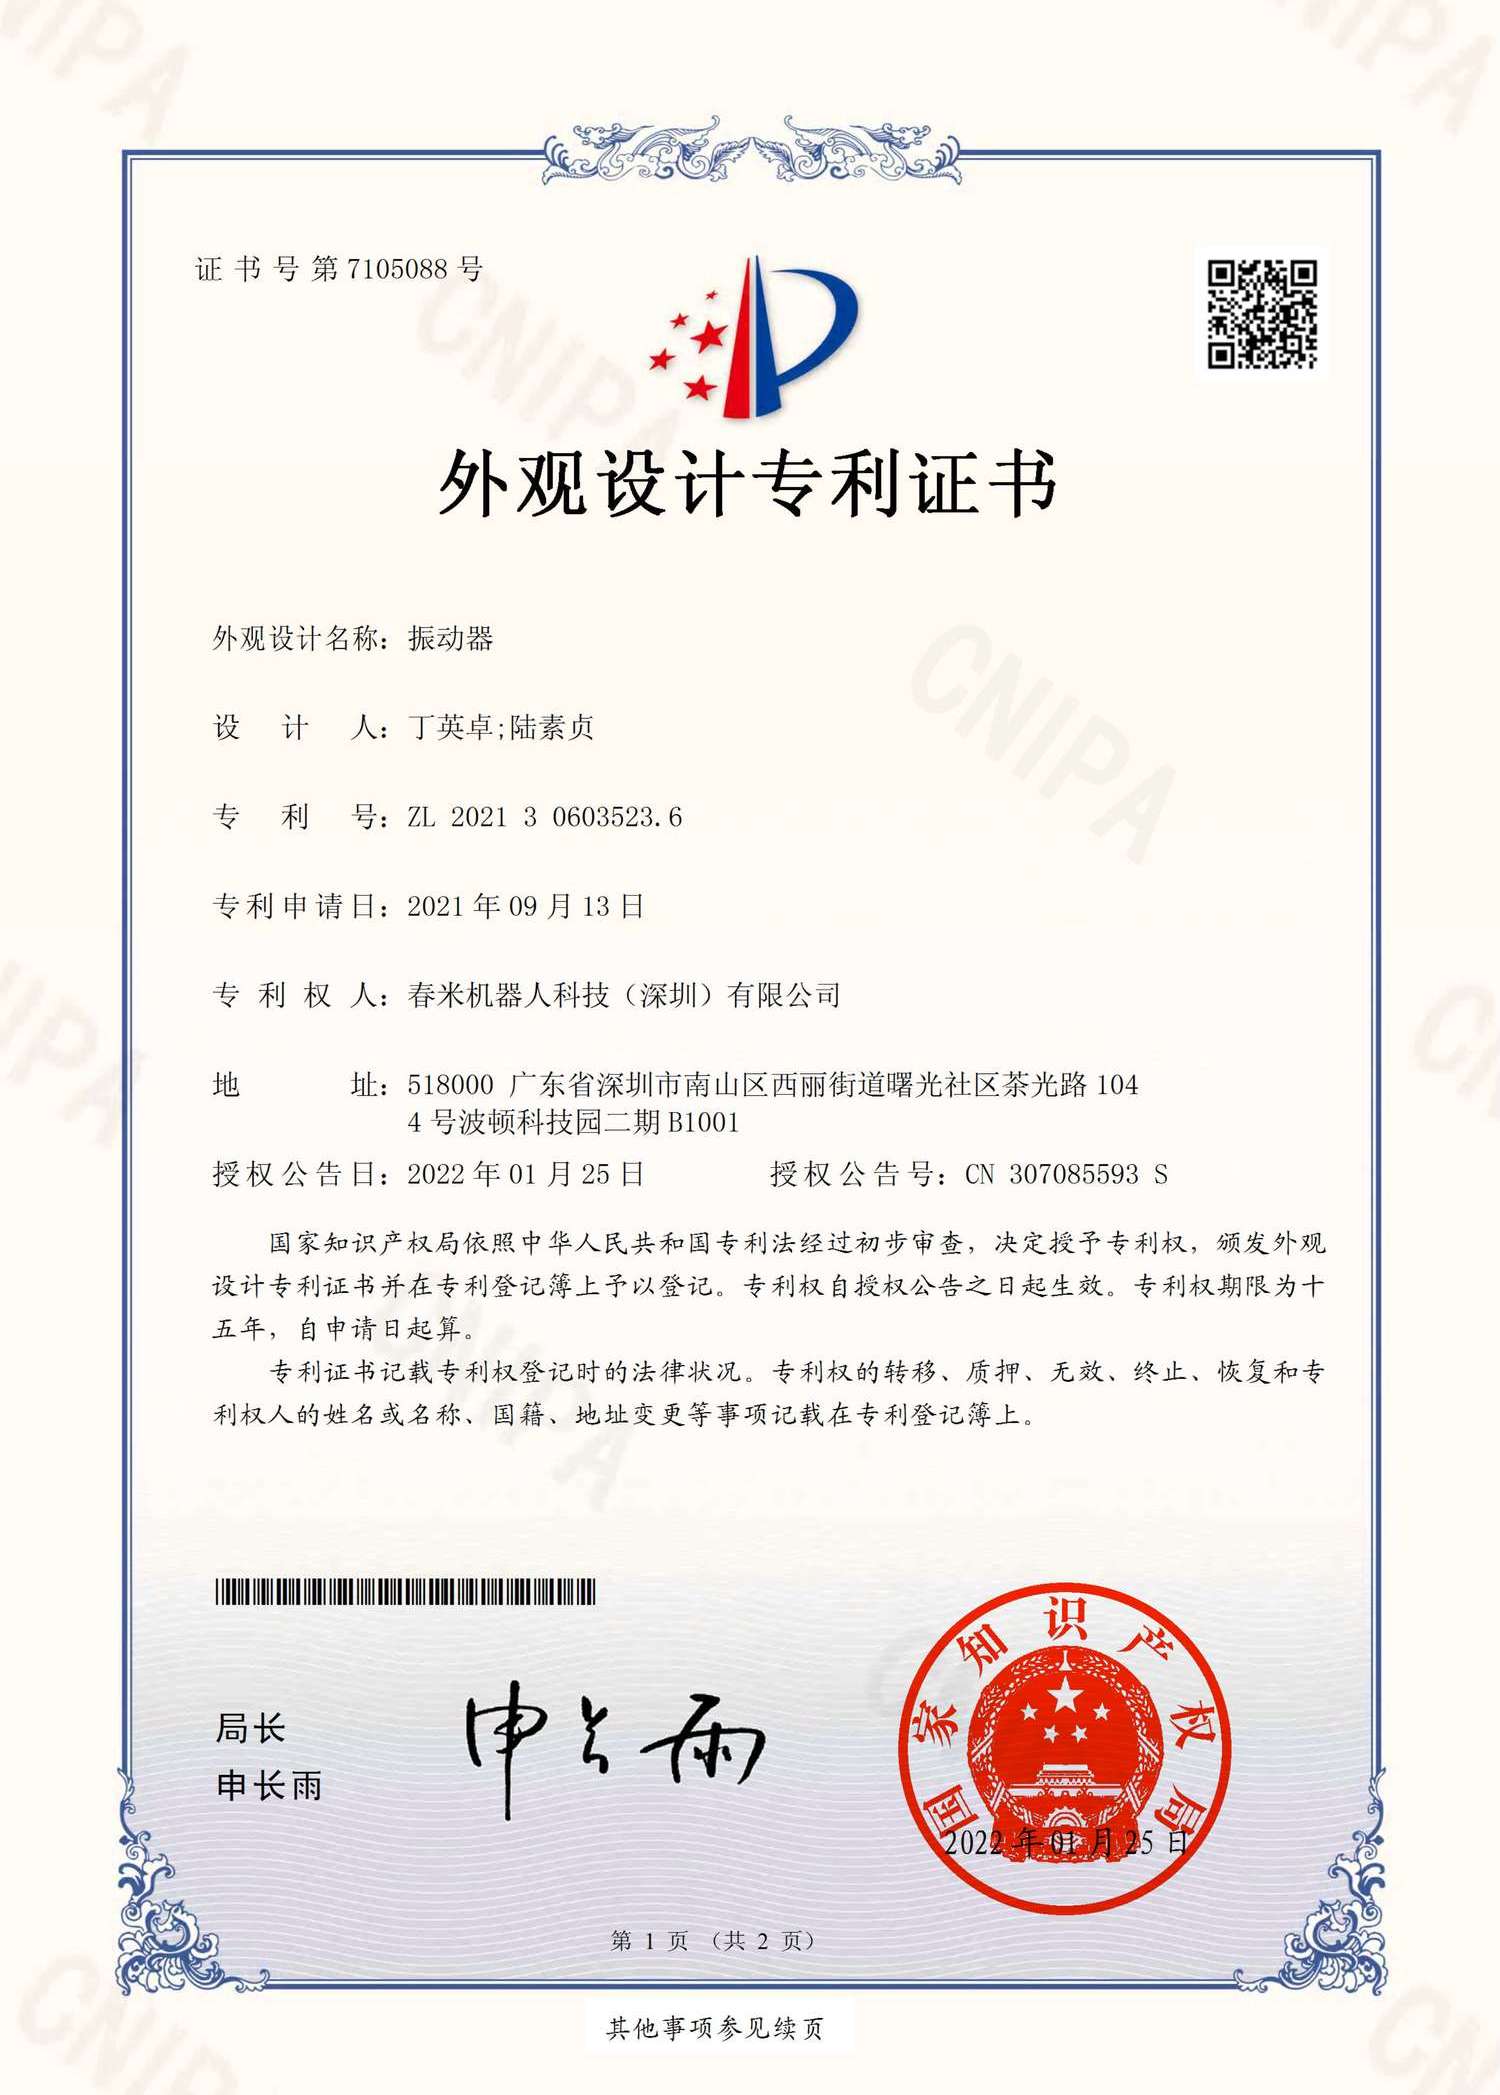 振动器-外观专利TY321-0724 2021306035236 证书 春米机器人(签章)_1.png